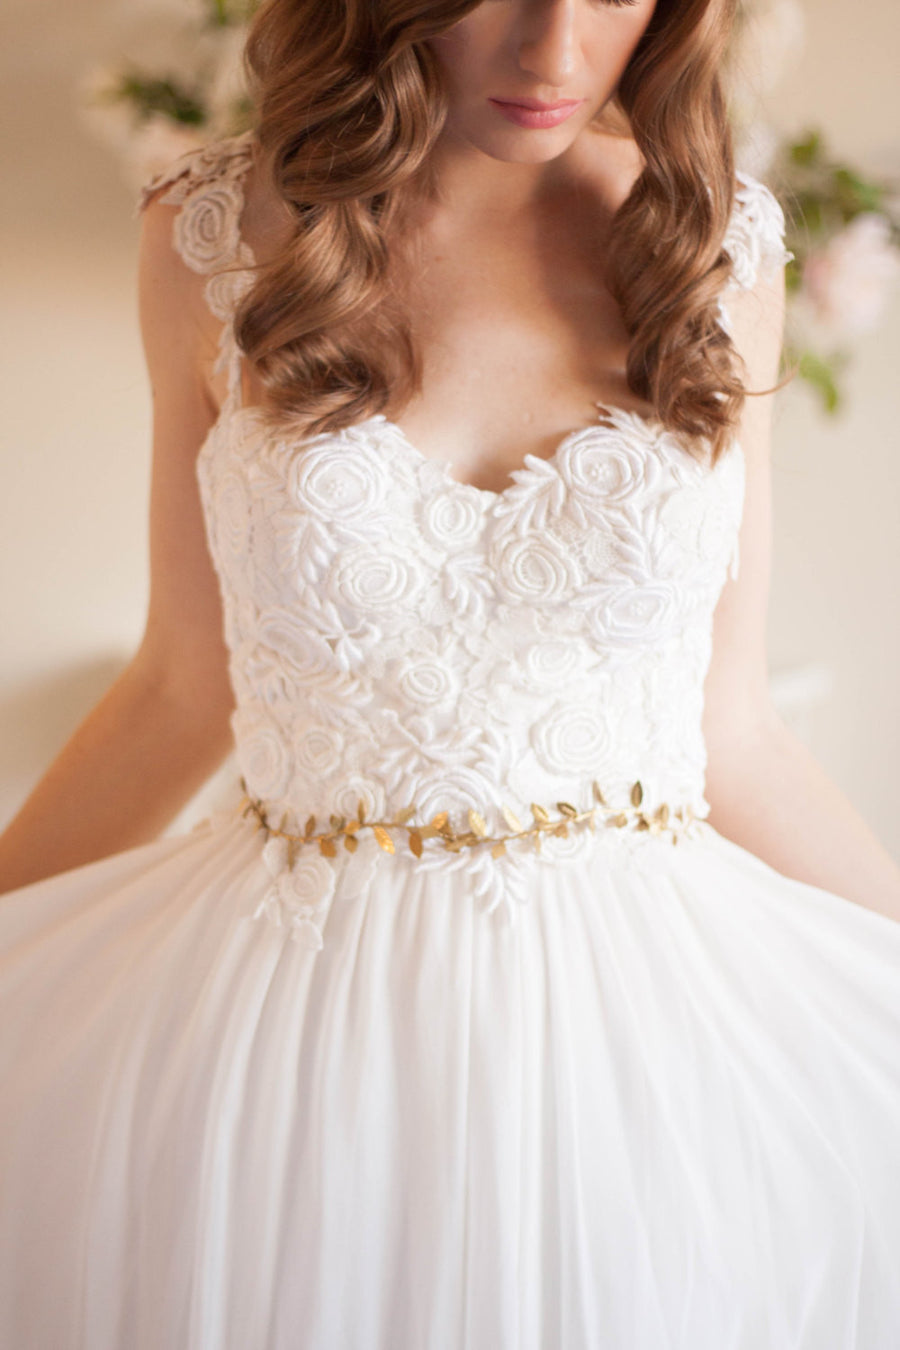 Bride in a wedding dress wearing a gold leaf sash